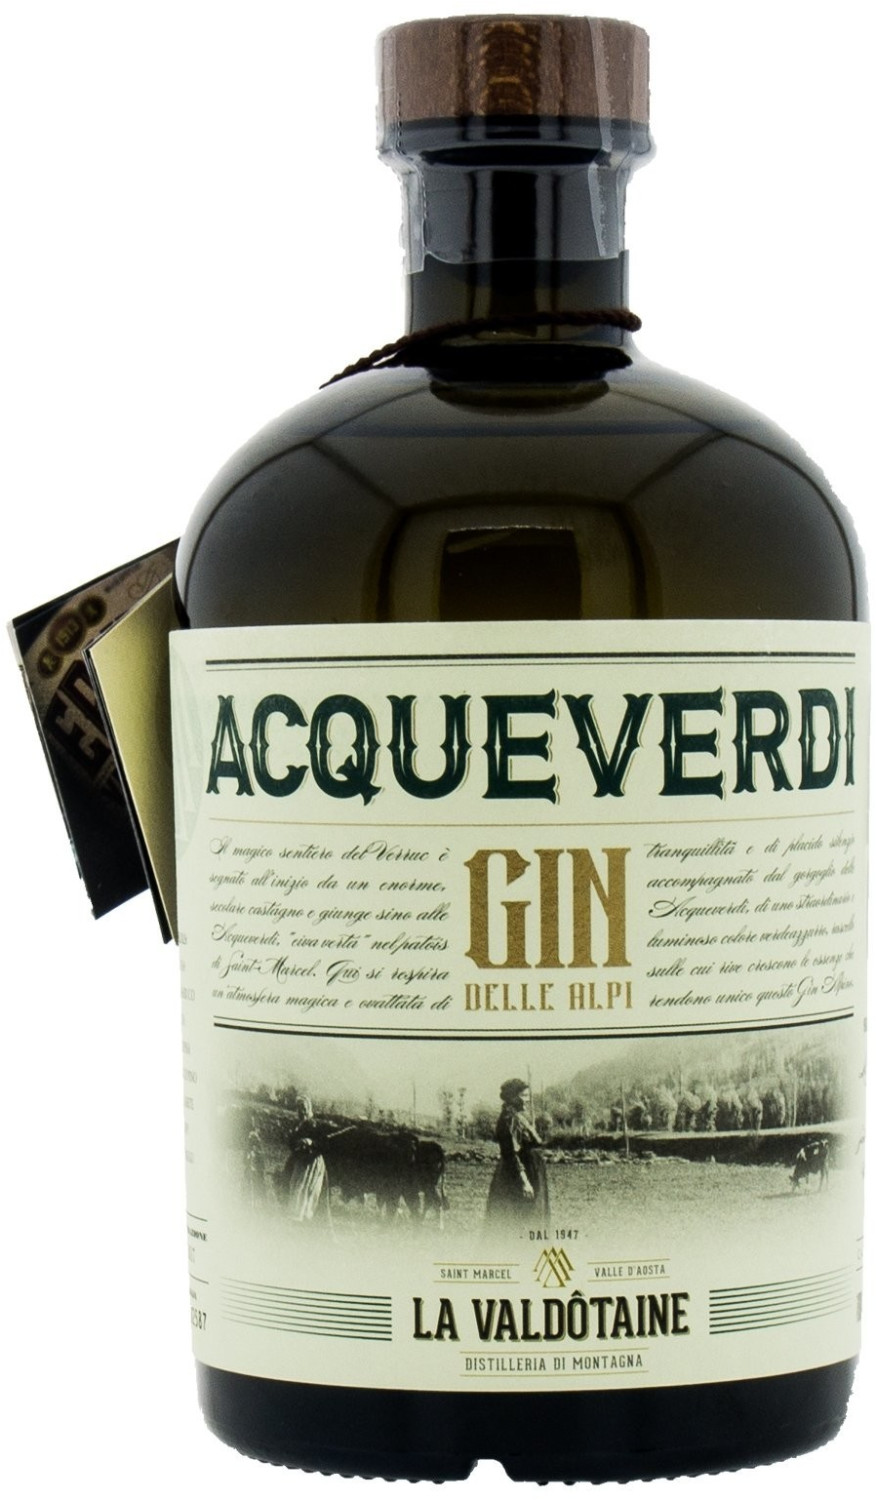 La Valdotaine Acqueverdi Gin 43% 1l